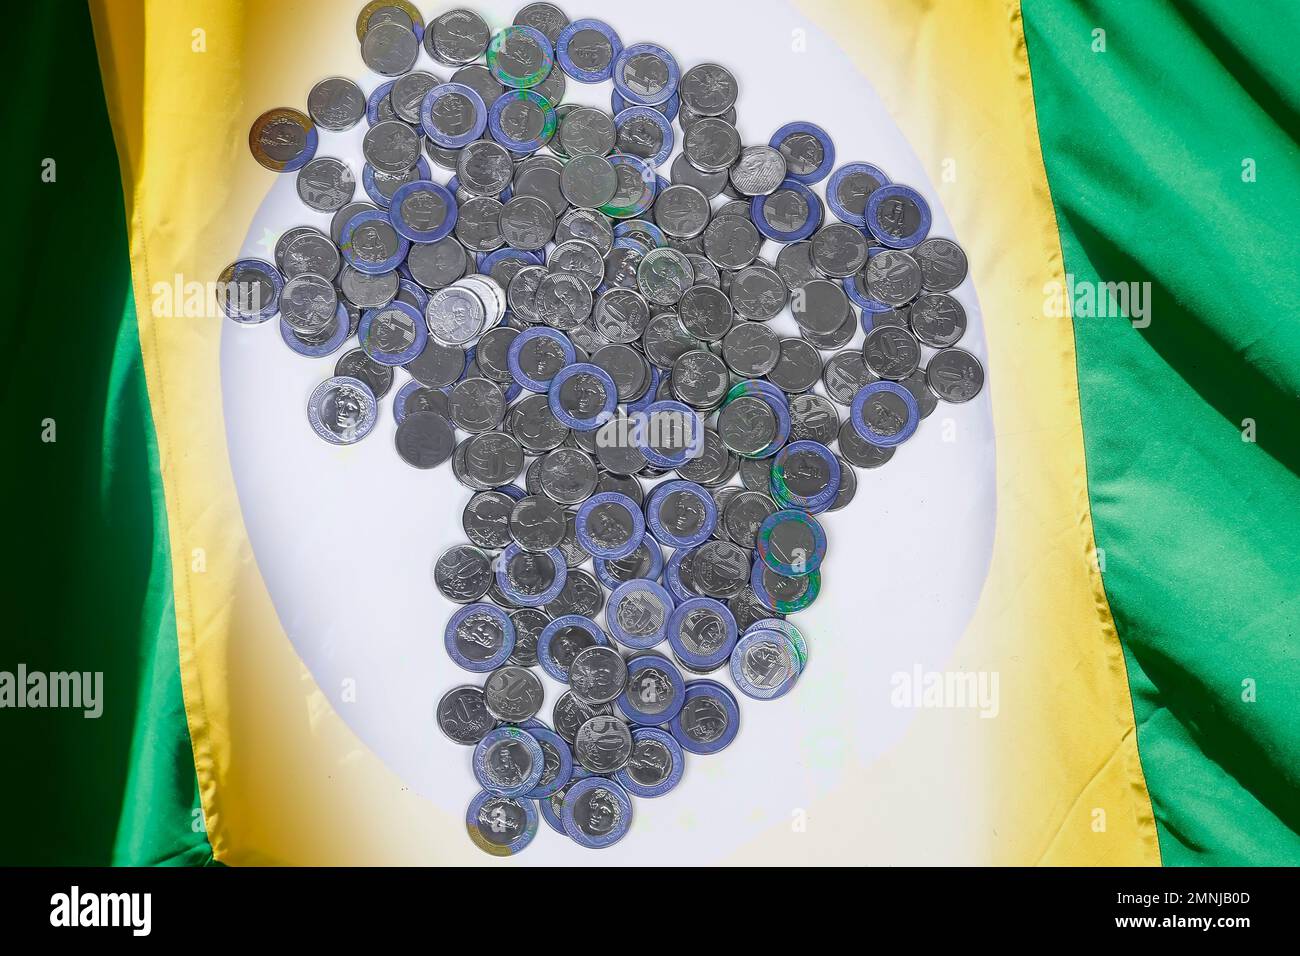 gruppo di monete in denaro reale provenienti dal brasile - economia e finanza - bandiera brasiliana Foto Stock